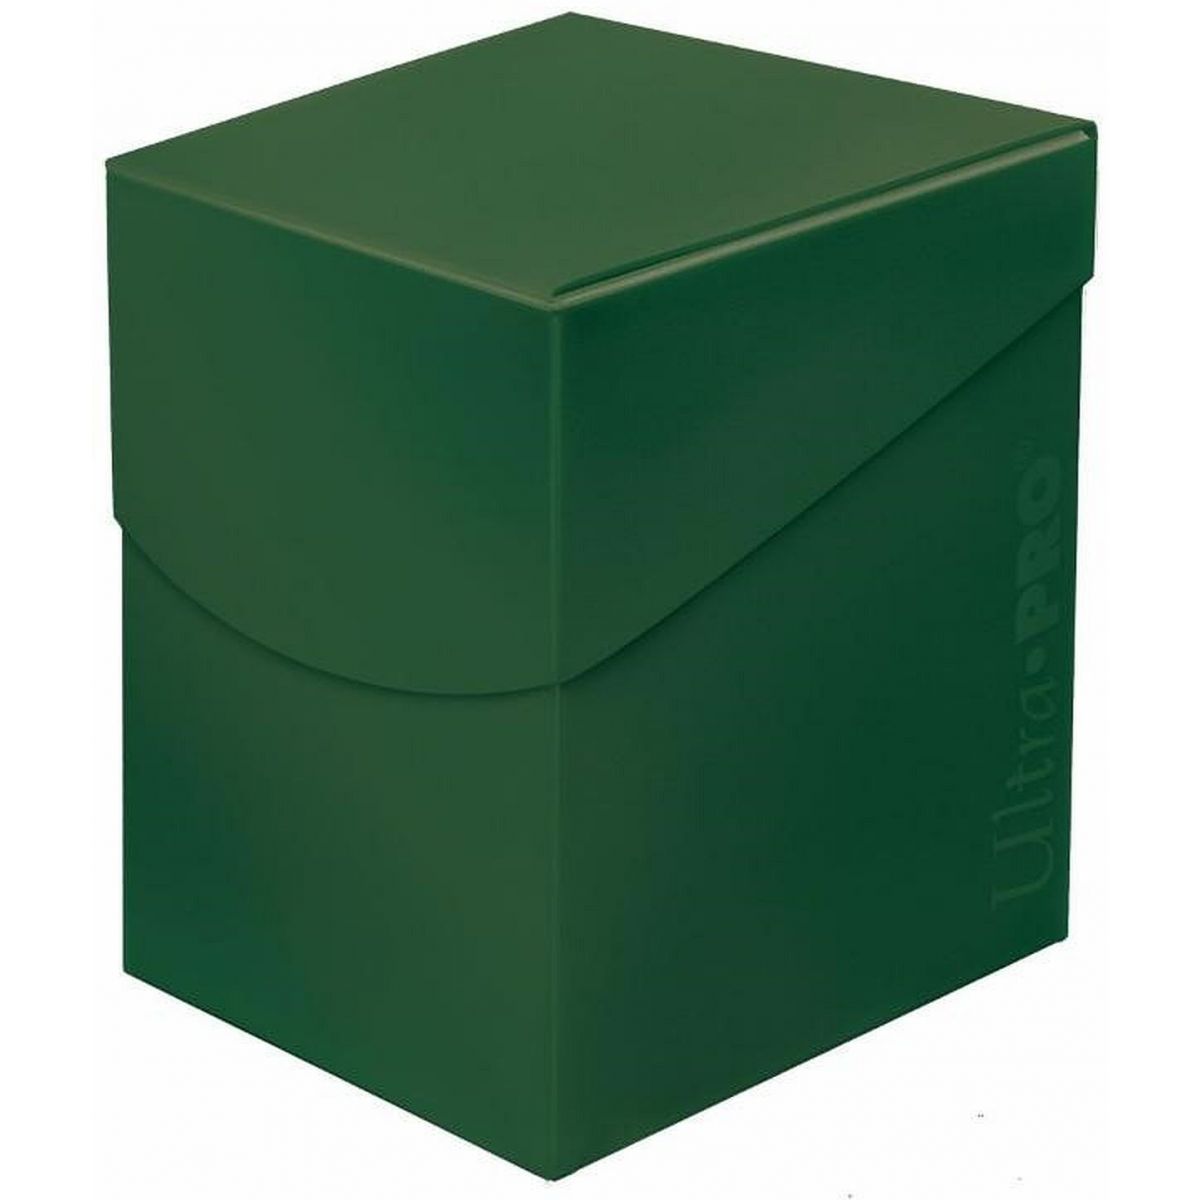 Deckbox - Eclipse PRO 100+ Forest Green